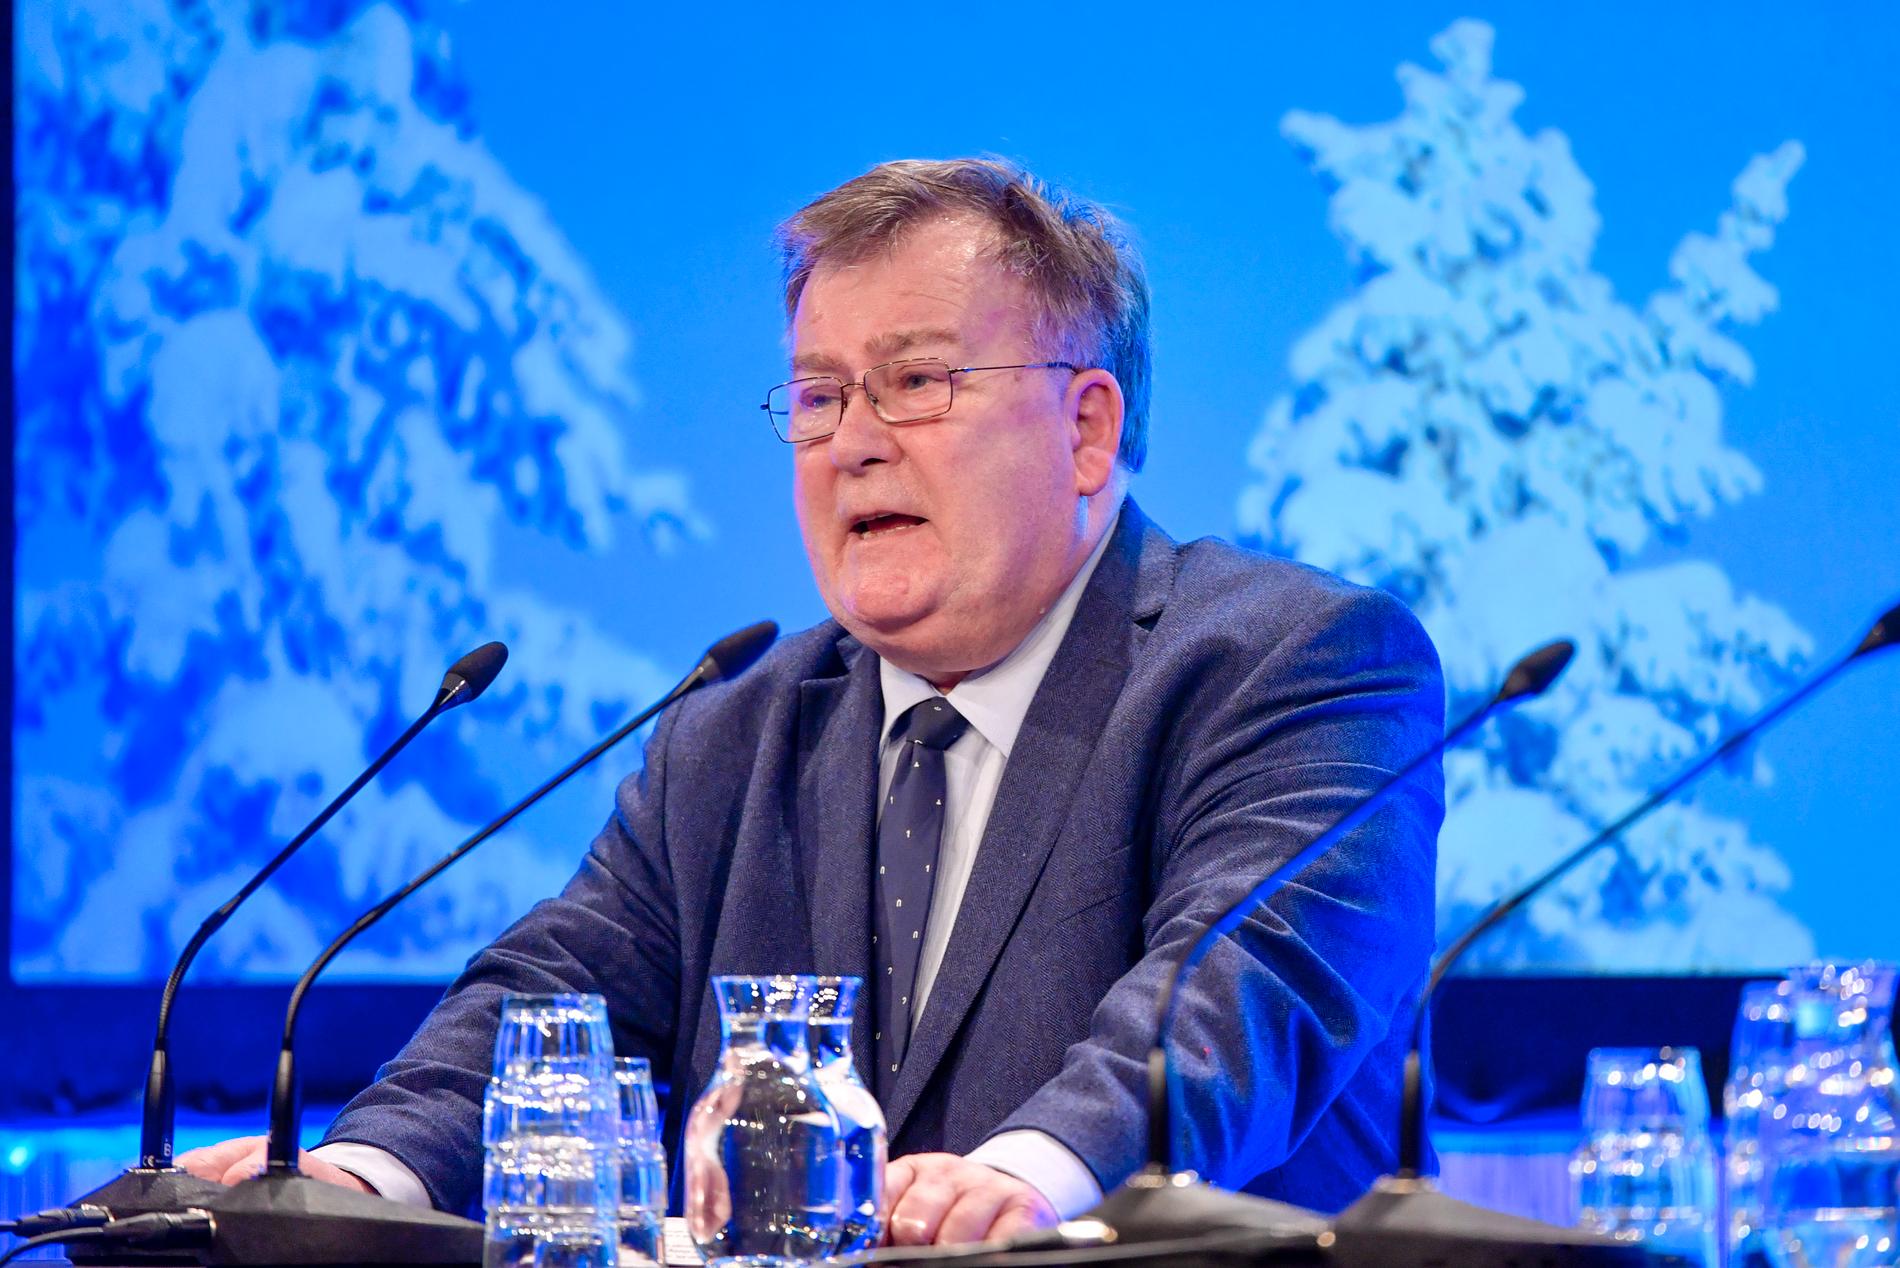 Danmarks tidigare försvarsminister Claus Hjort Frederiksen är misstänkt för att ha röjt eller spridit statshemligheter. Jan Guillou skriver – och påminner om när han själv jagades under IB-affären 